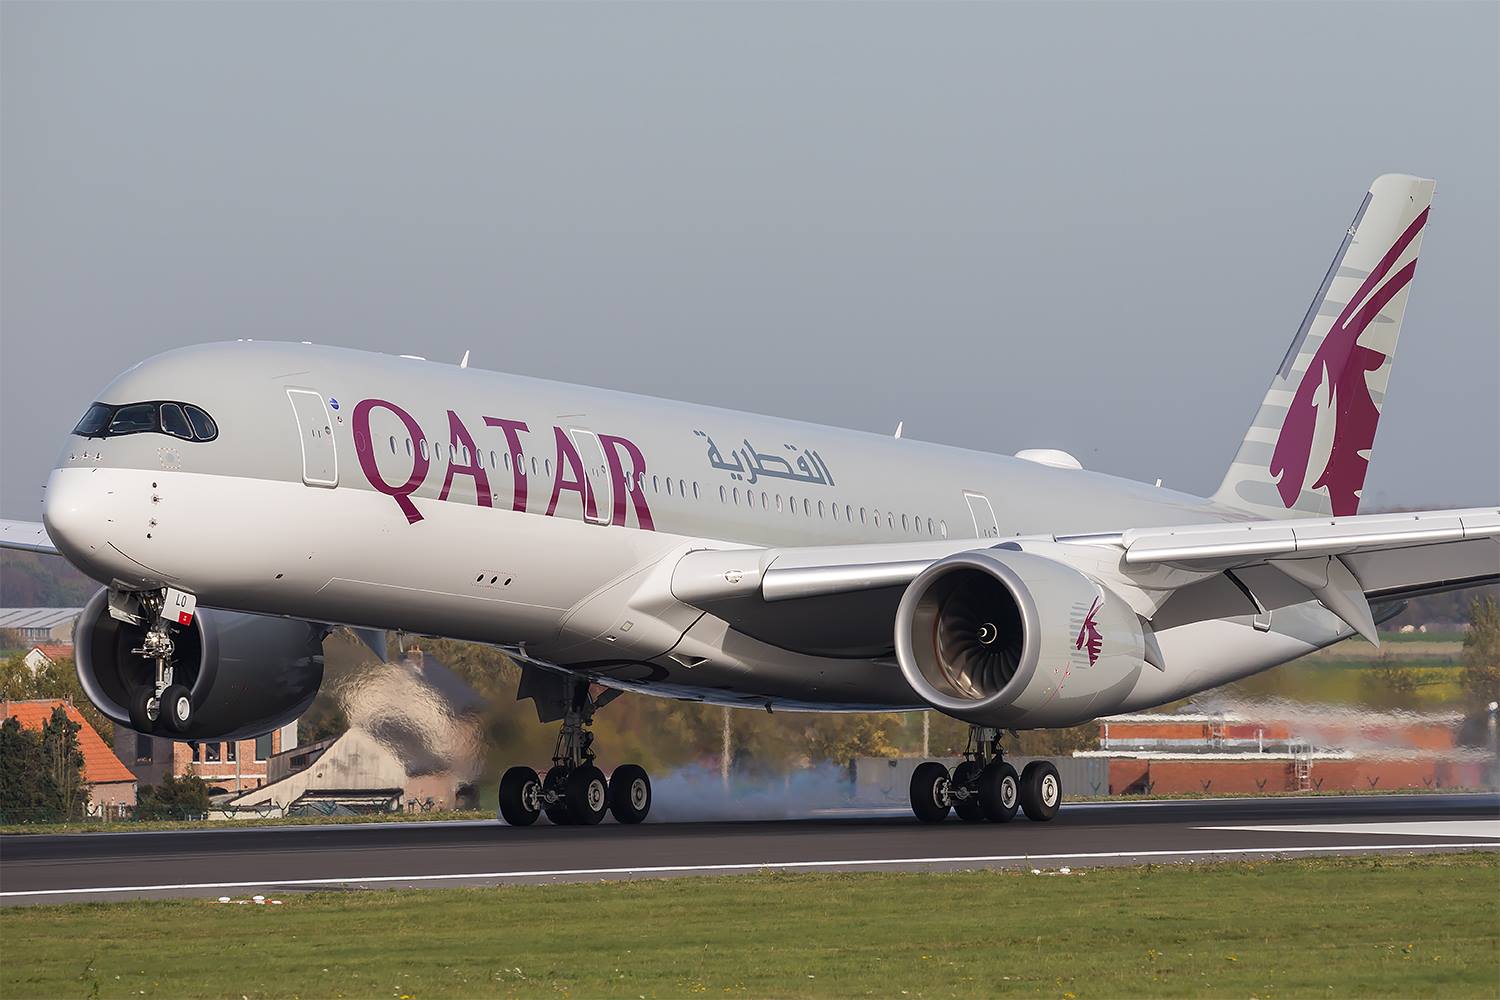 Î‘Ï€Î¿Ï„Î­Î»ÎµÏƒÎ¼Î± ÎµÎ¹ÎºÏŒÎ½Î±Ï‚ Î³Î¹Î± Qatar Airways Rolls Out â€˜Super Wi-Fiâ€™ High Speed Broadband On Its Boeing 777 and Airbus A350 Fleet